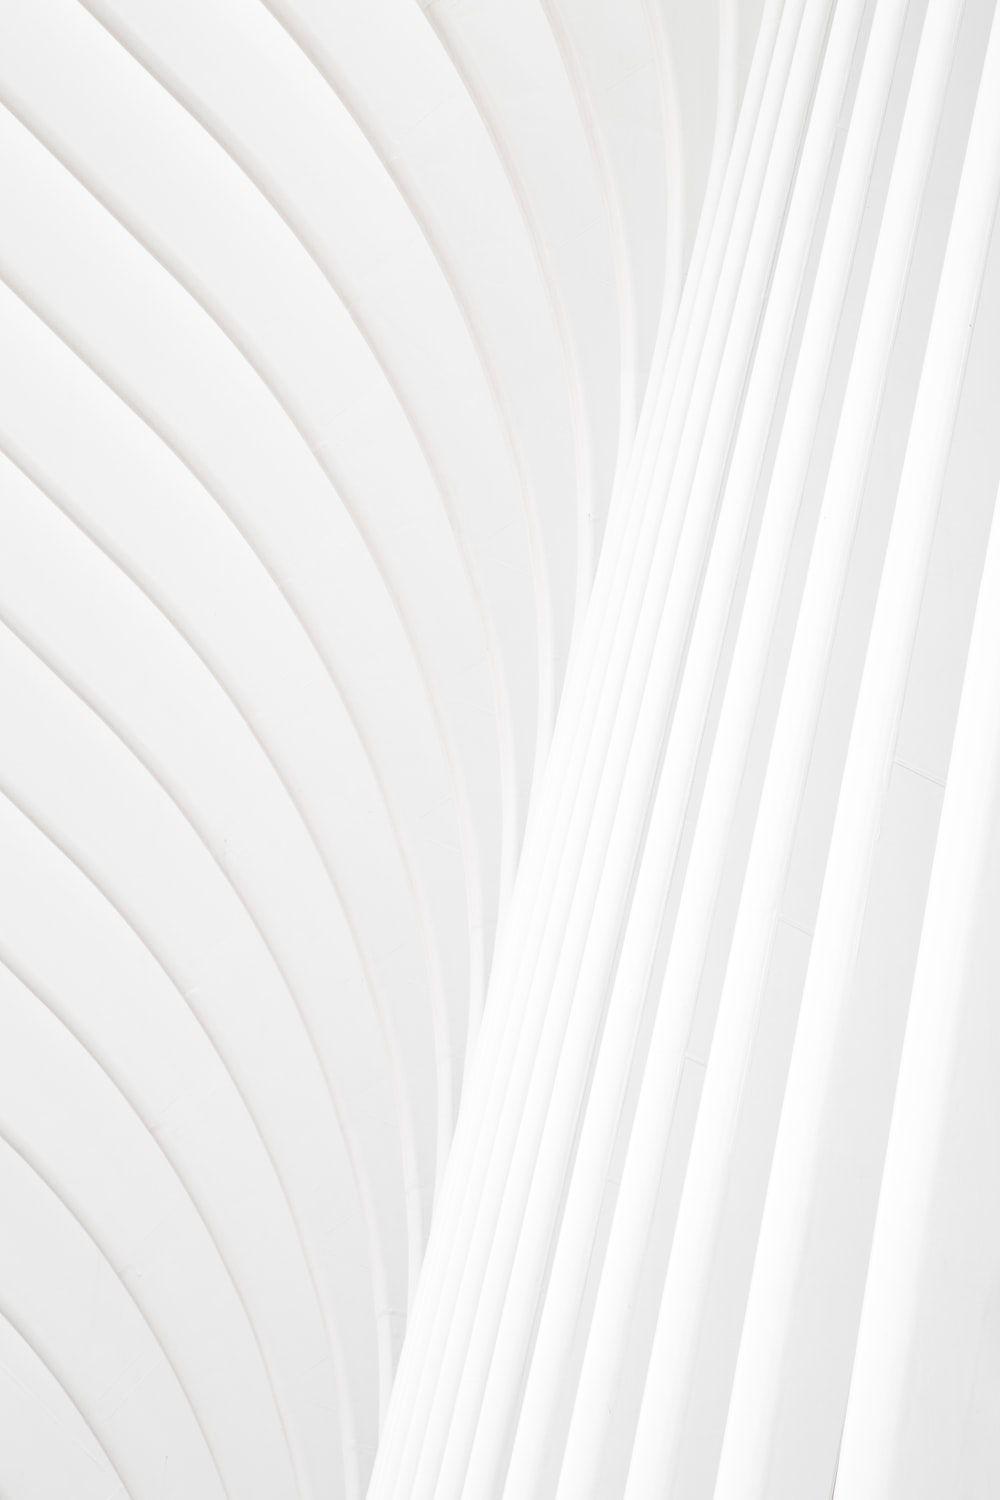 Những hình nền trắng 8k miễn phí hàng đầu tại WallpaperAccess được thiết kế đẹp mắt và chất lượng tuyệt vời. Với độ phân giải cao 8k, hình ảnh sẽ trông rõ nét trên màn hình của bạn và mang lại sự sang trọng và tinh tế cho thiết bị của bạn.